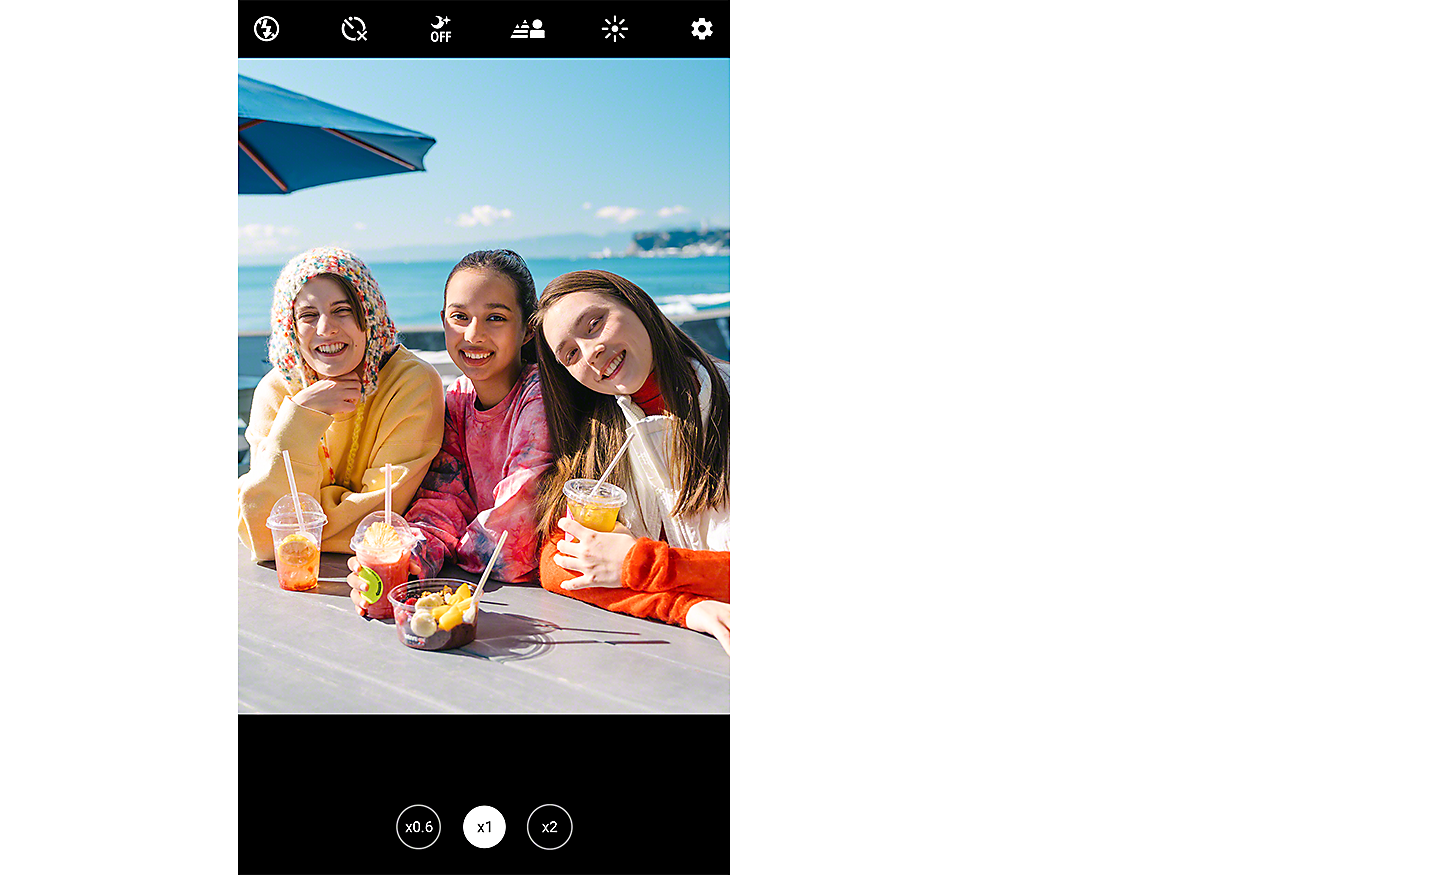 Screenshot met drie jonge vrouwen die naar de camera lachen terwijl ze aan tafel zitten met uitzicht op zee